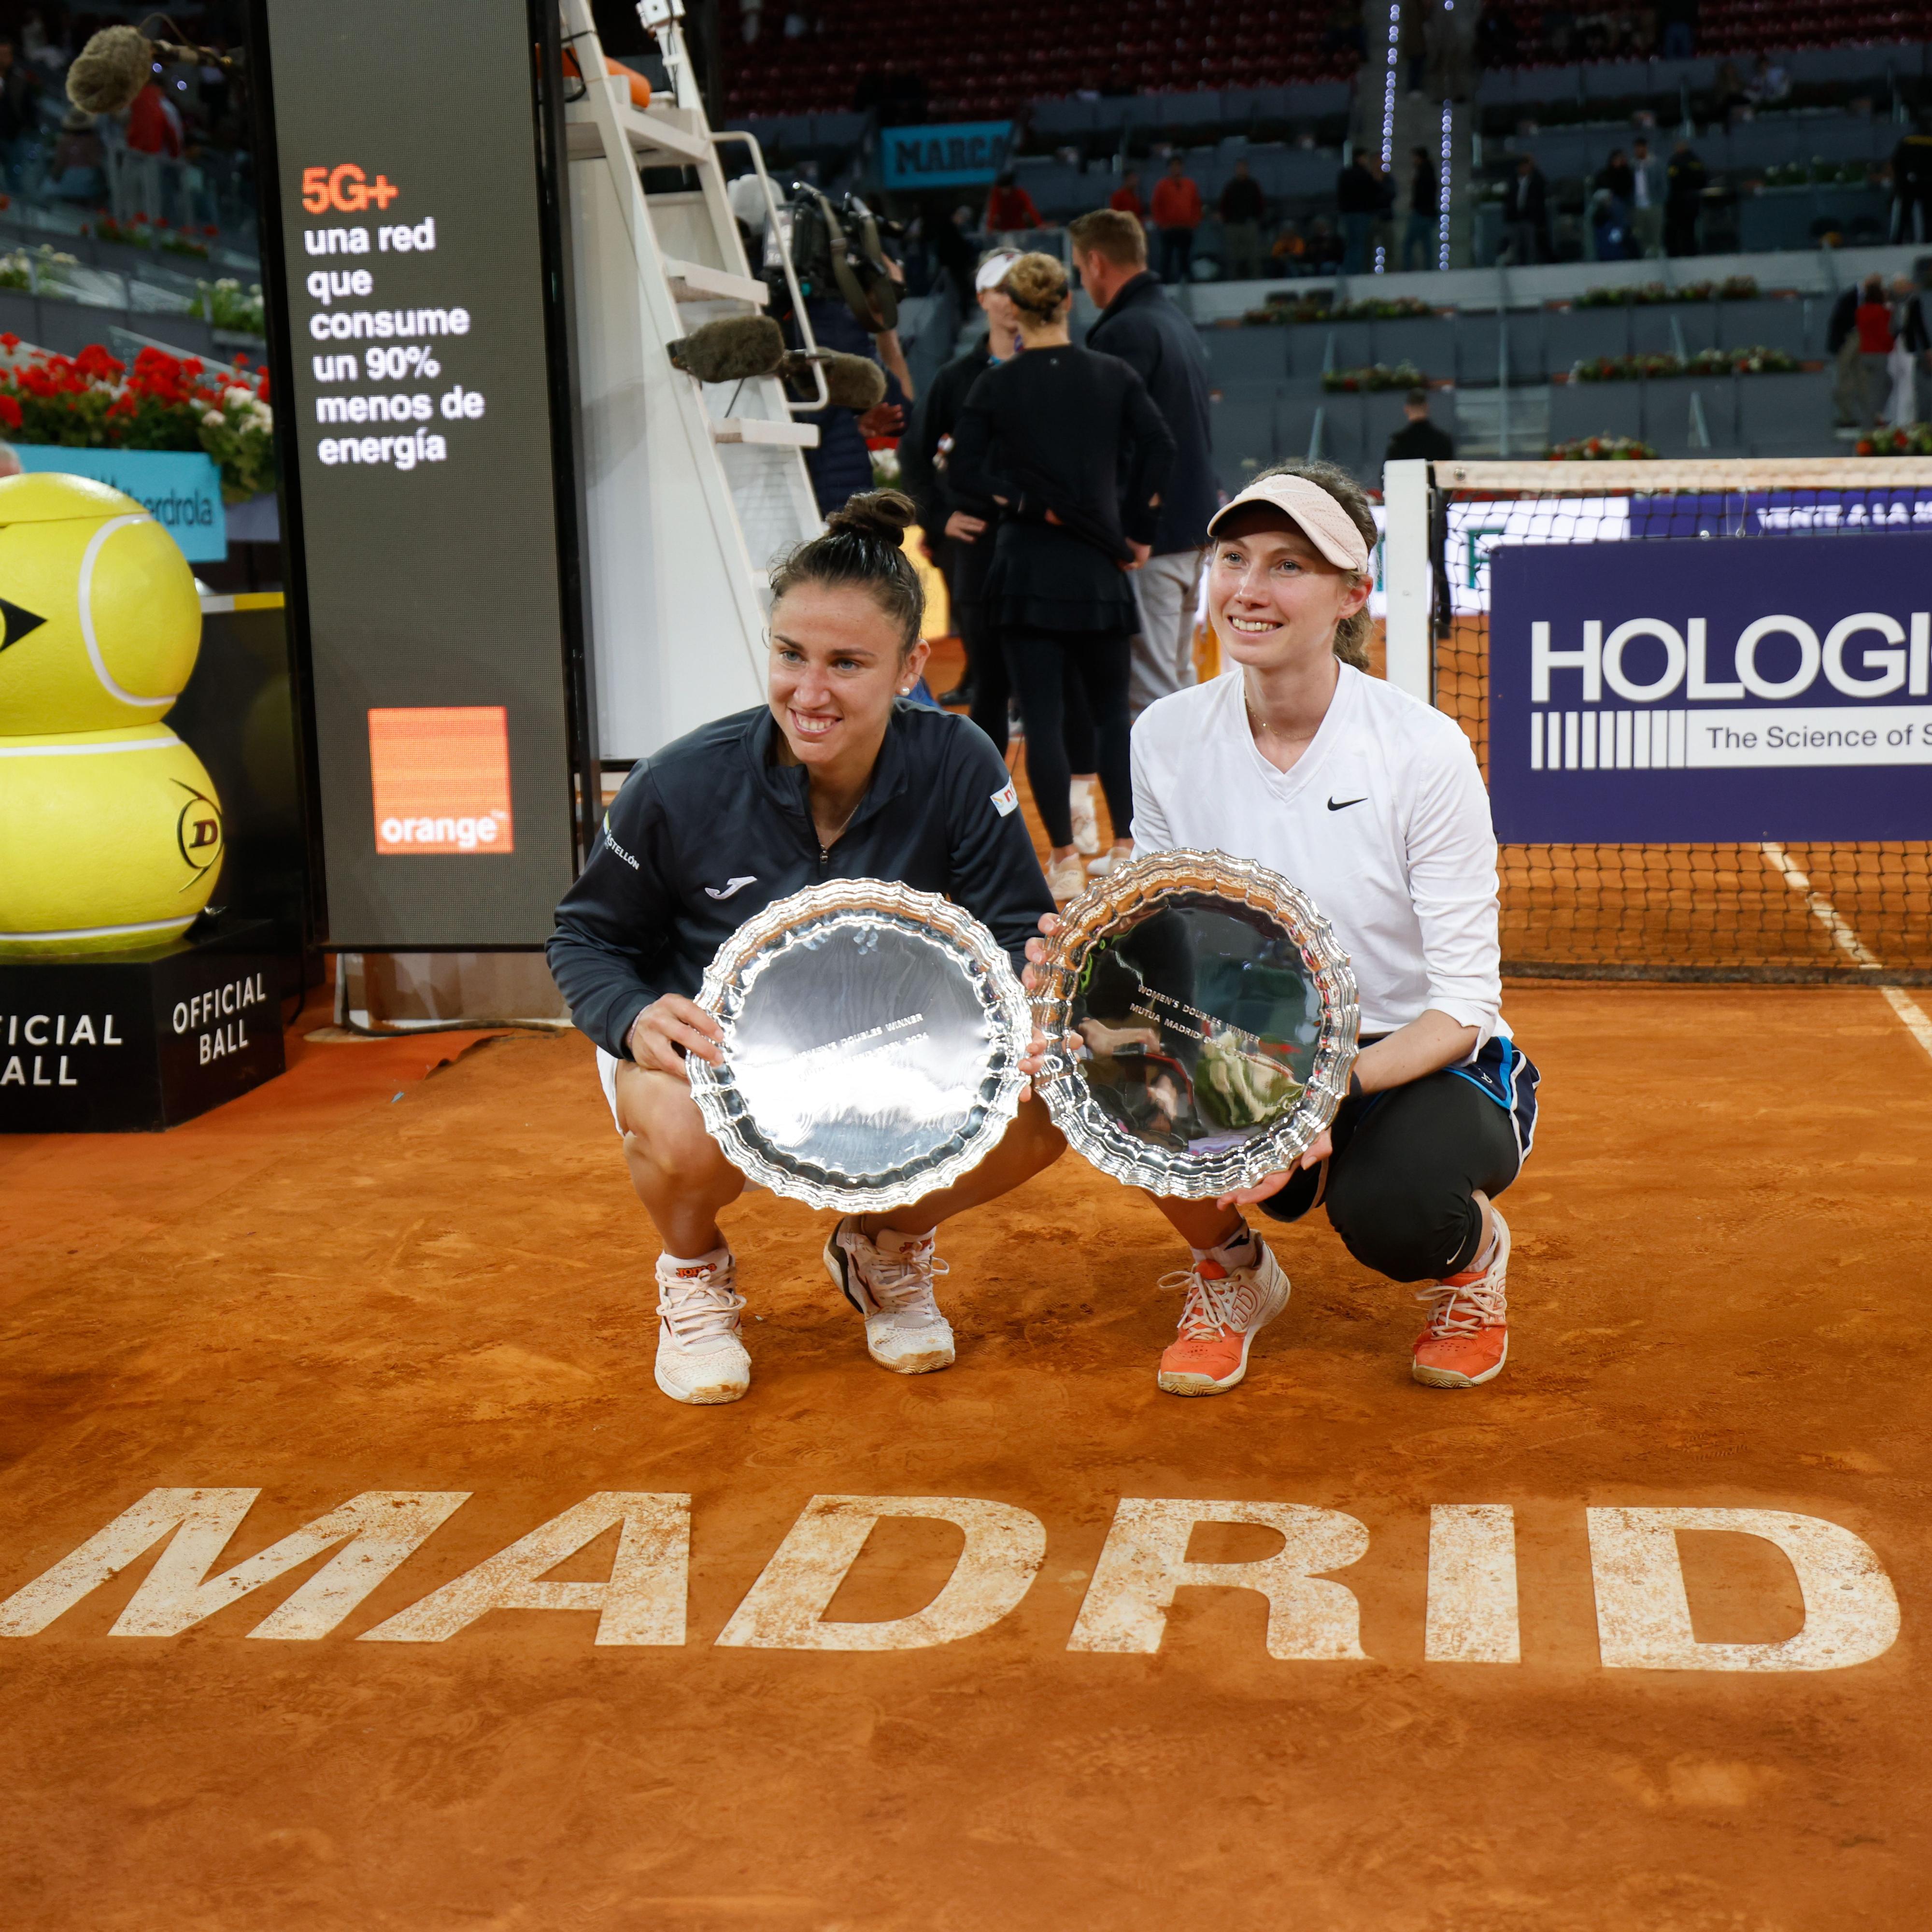 Tablero deportivo – Sara Sorribes y Cristina Bucsa campeonas en Madrid en su primer torneo juntas